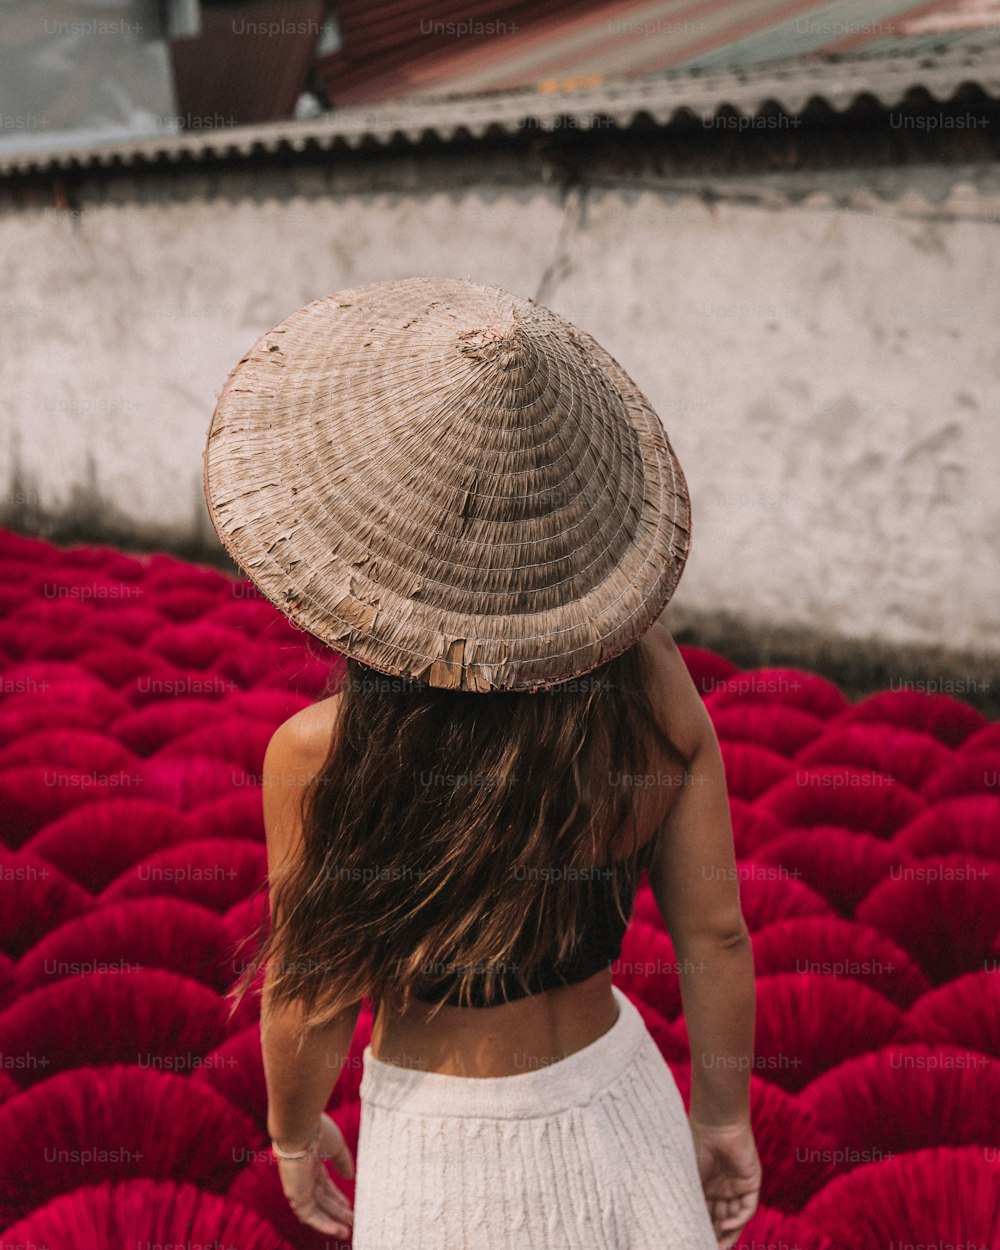 밀짚모자를 쓴 여자가 붉은 꽃밭을 걷고 있다